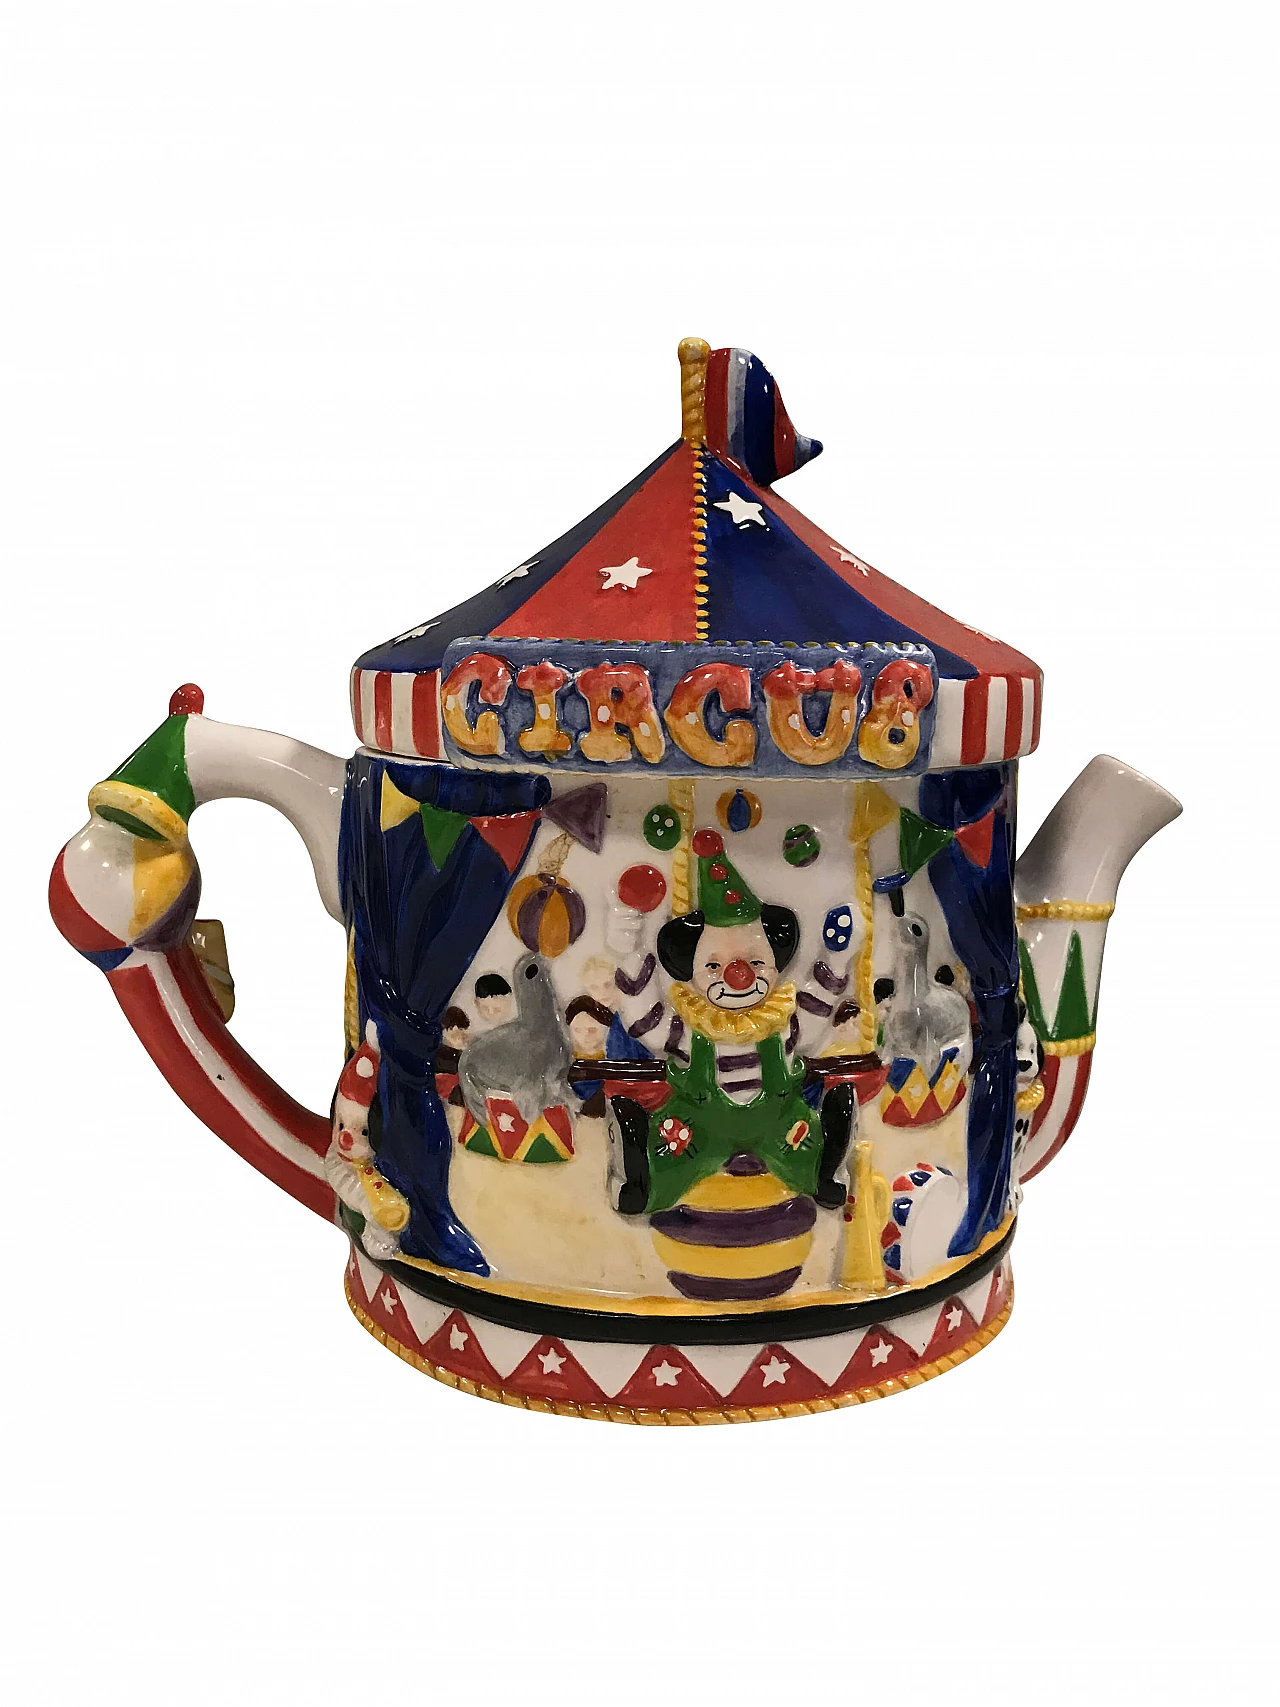 Circus-themed teapot, The Leonardo Collection 1062963